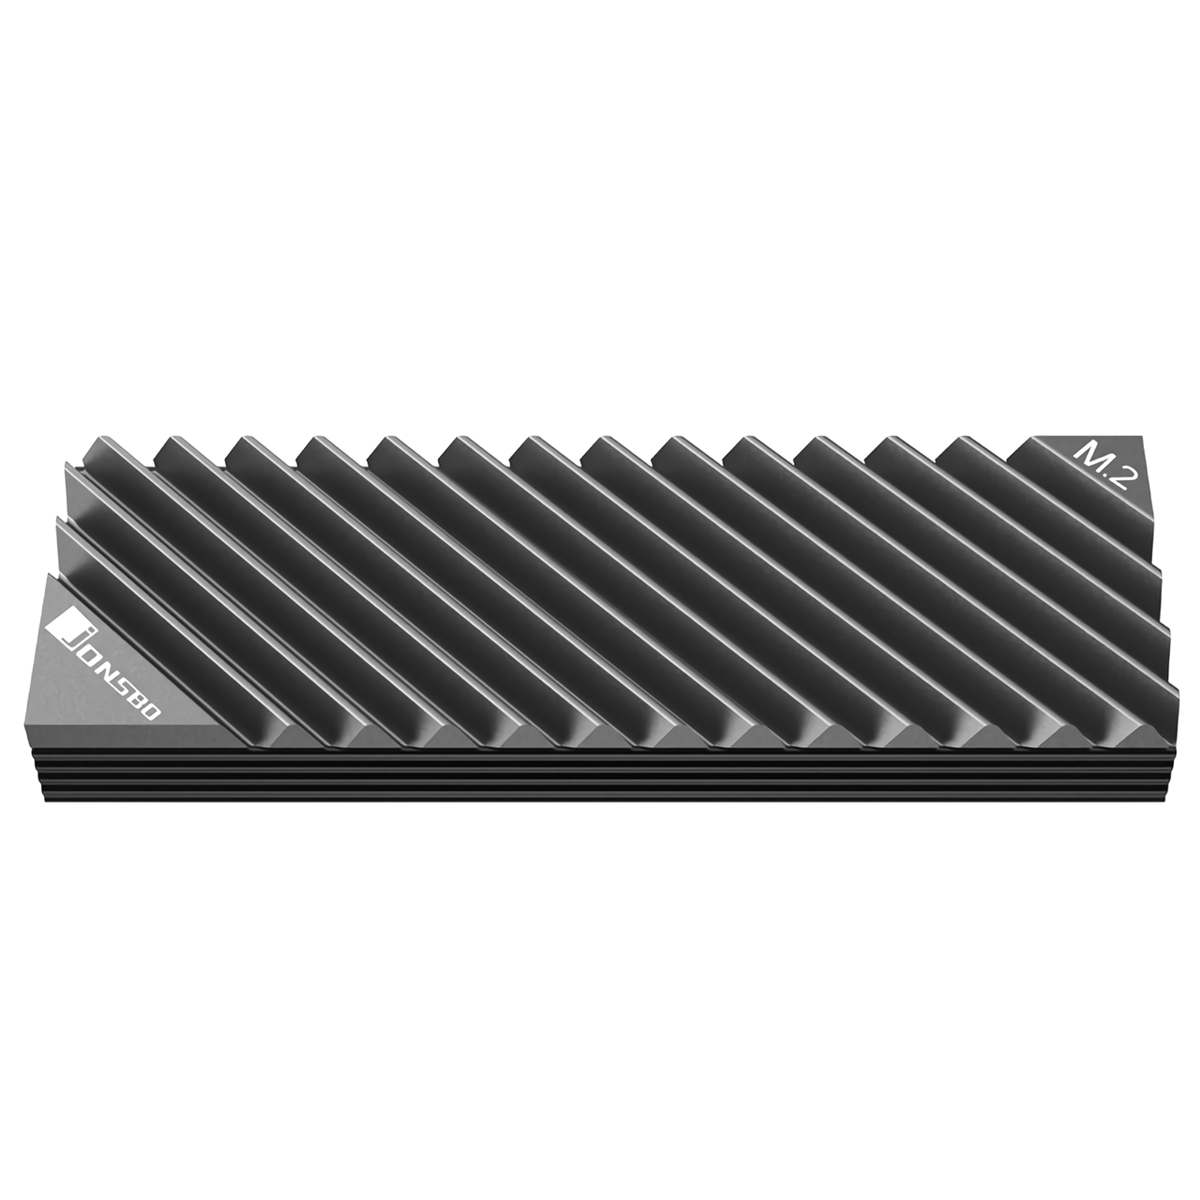 Jonsbo M2-3 M.2 2280 SSD Disco Rígido Dissipador de Calor de Alumínio com Almofada Térmica para PC Desktop Acessórios de Sistema de Arrefecimento